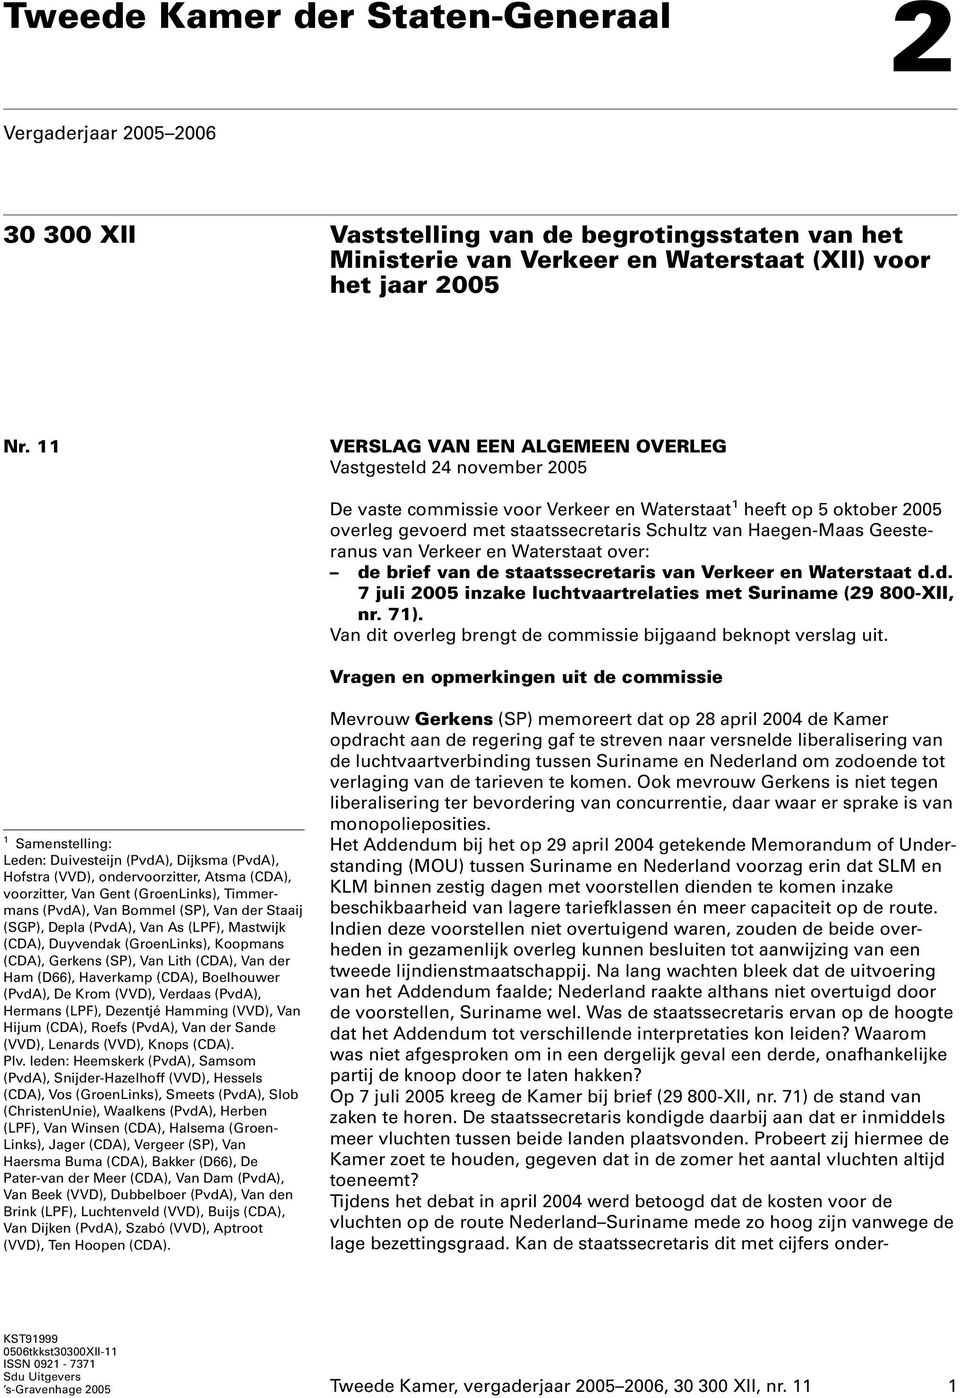 Geesteranus van Verkeer en Waterstaat over: de brief van de staatssecretaris van Verkeer en Waterstaat d.d. 7 juli 2005 inzake luchtvaartrelaties met Suriname (29 800-XII, nr. 71).